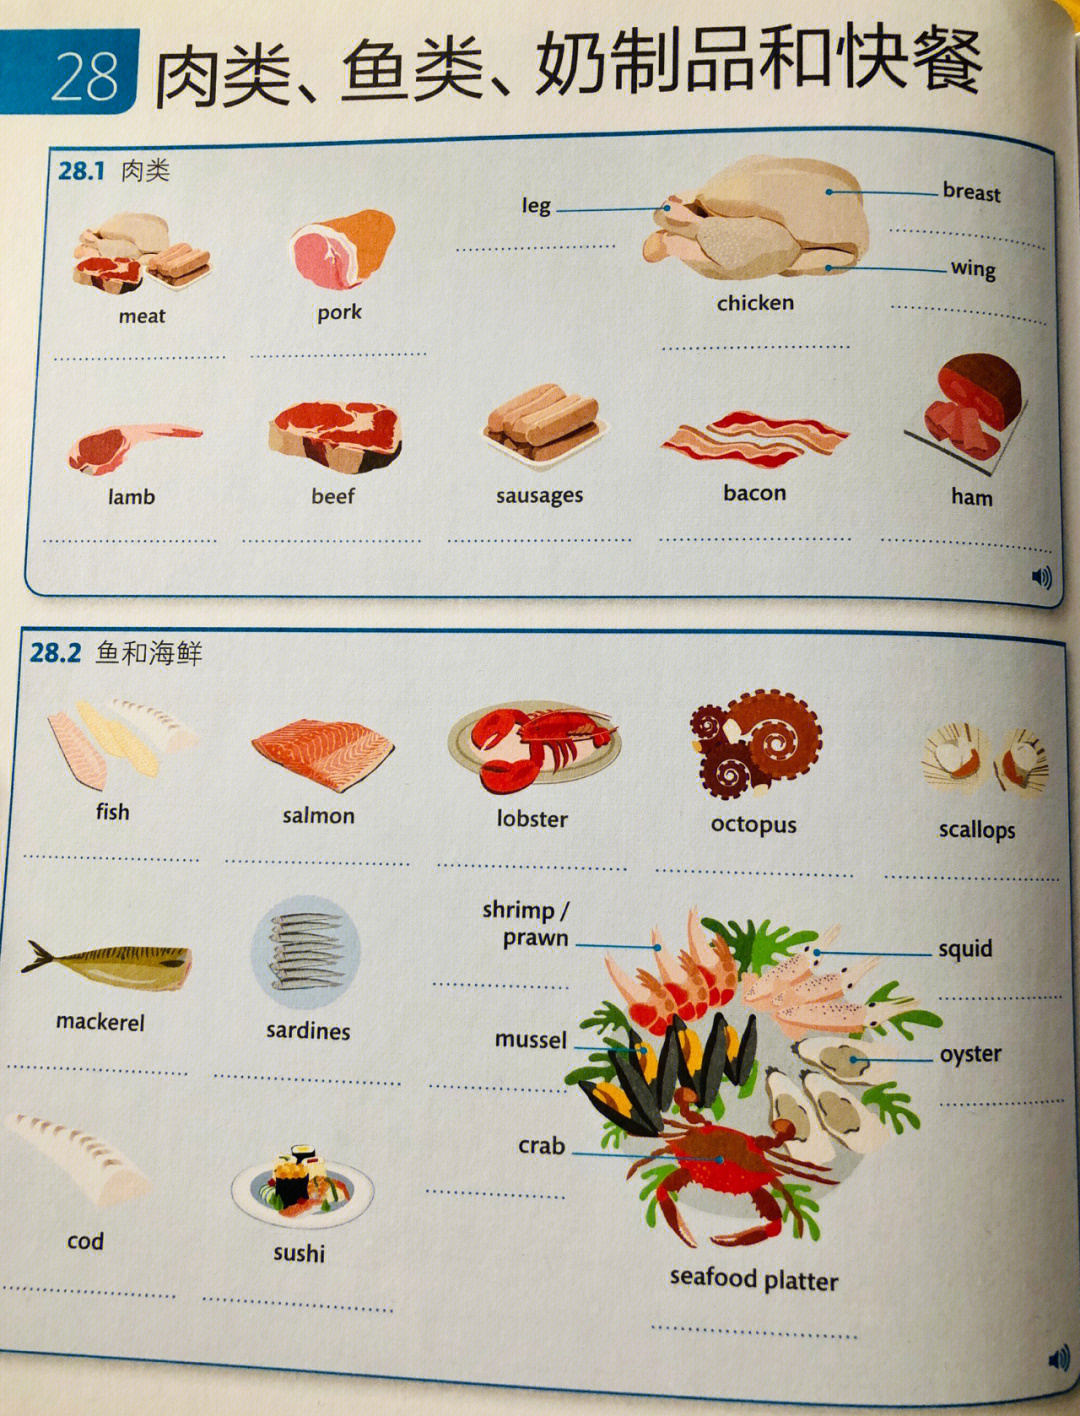 肉类英语单词图片